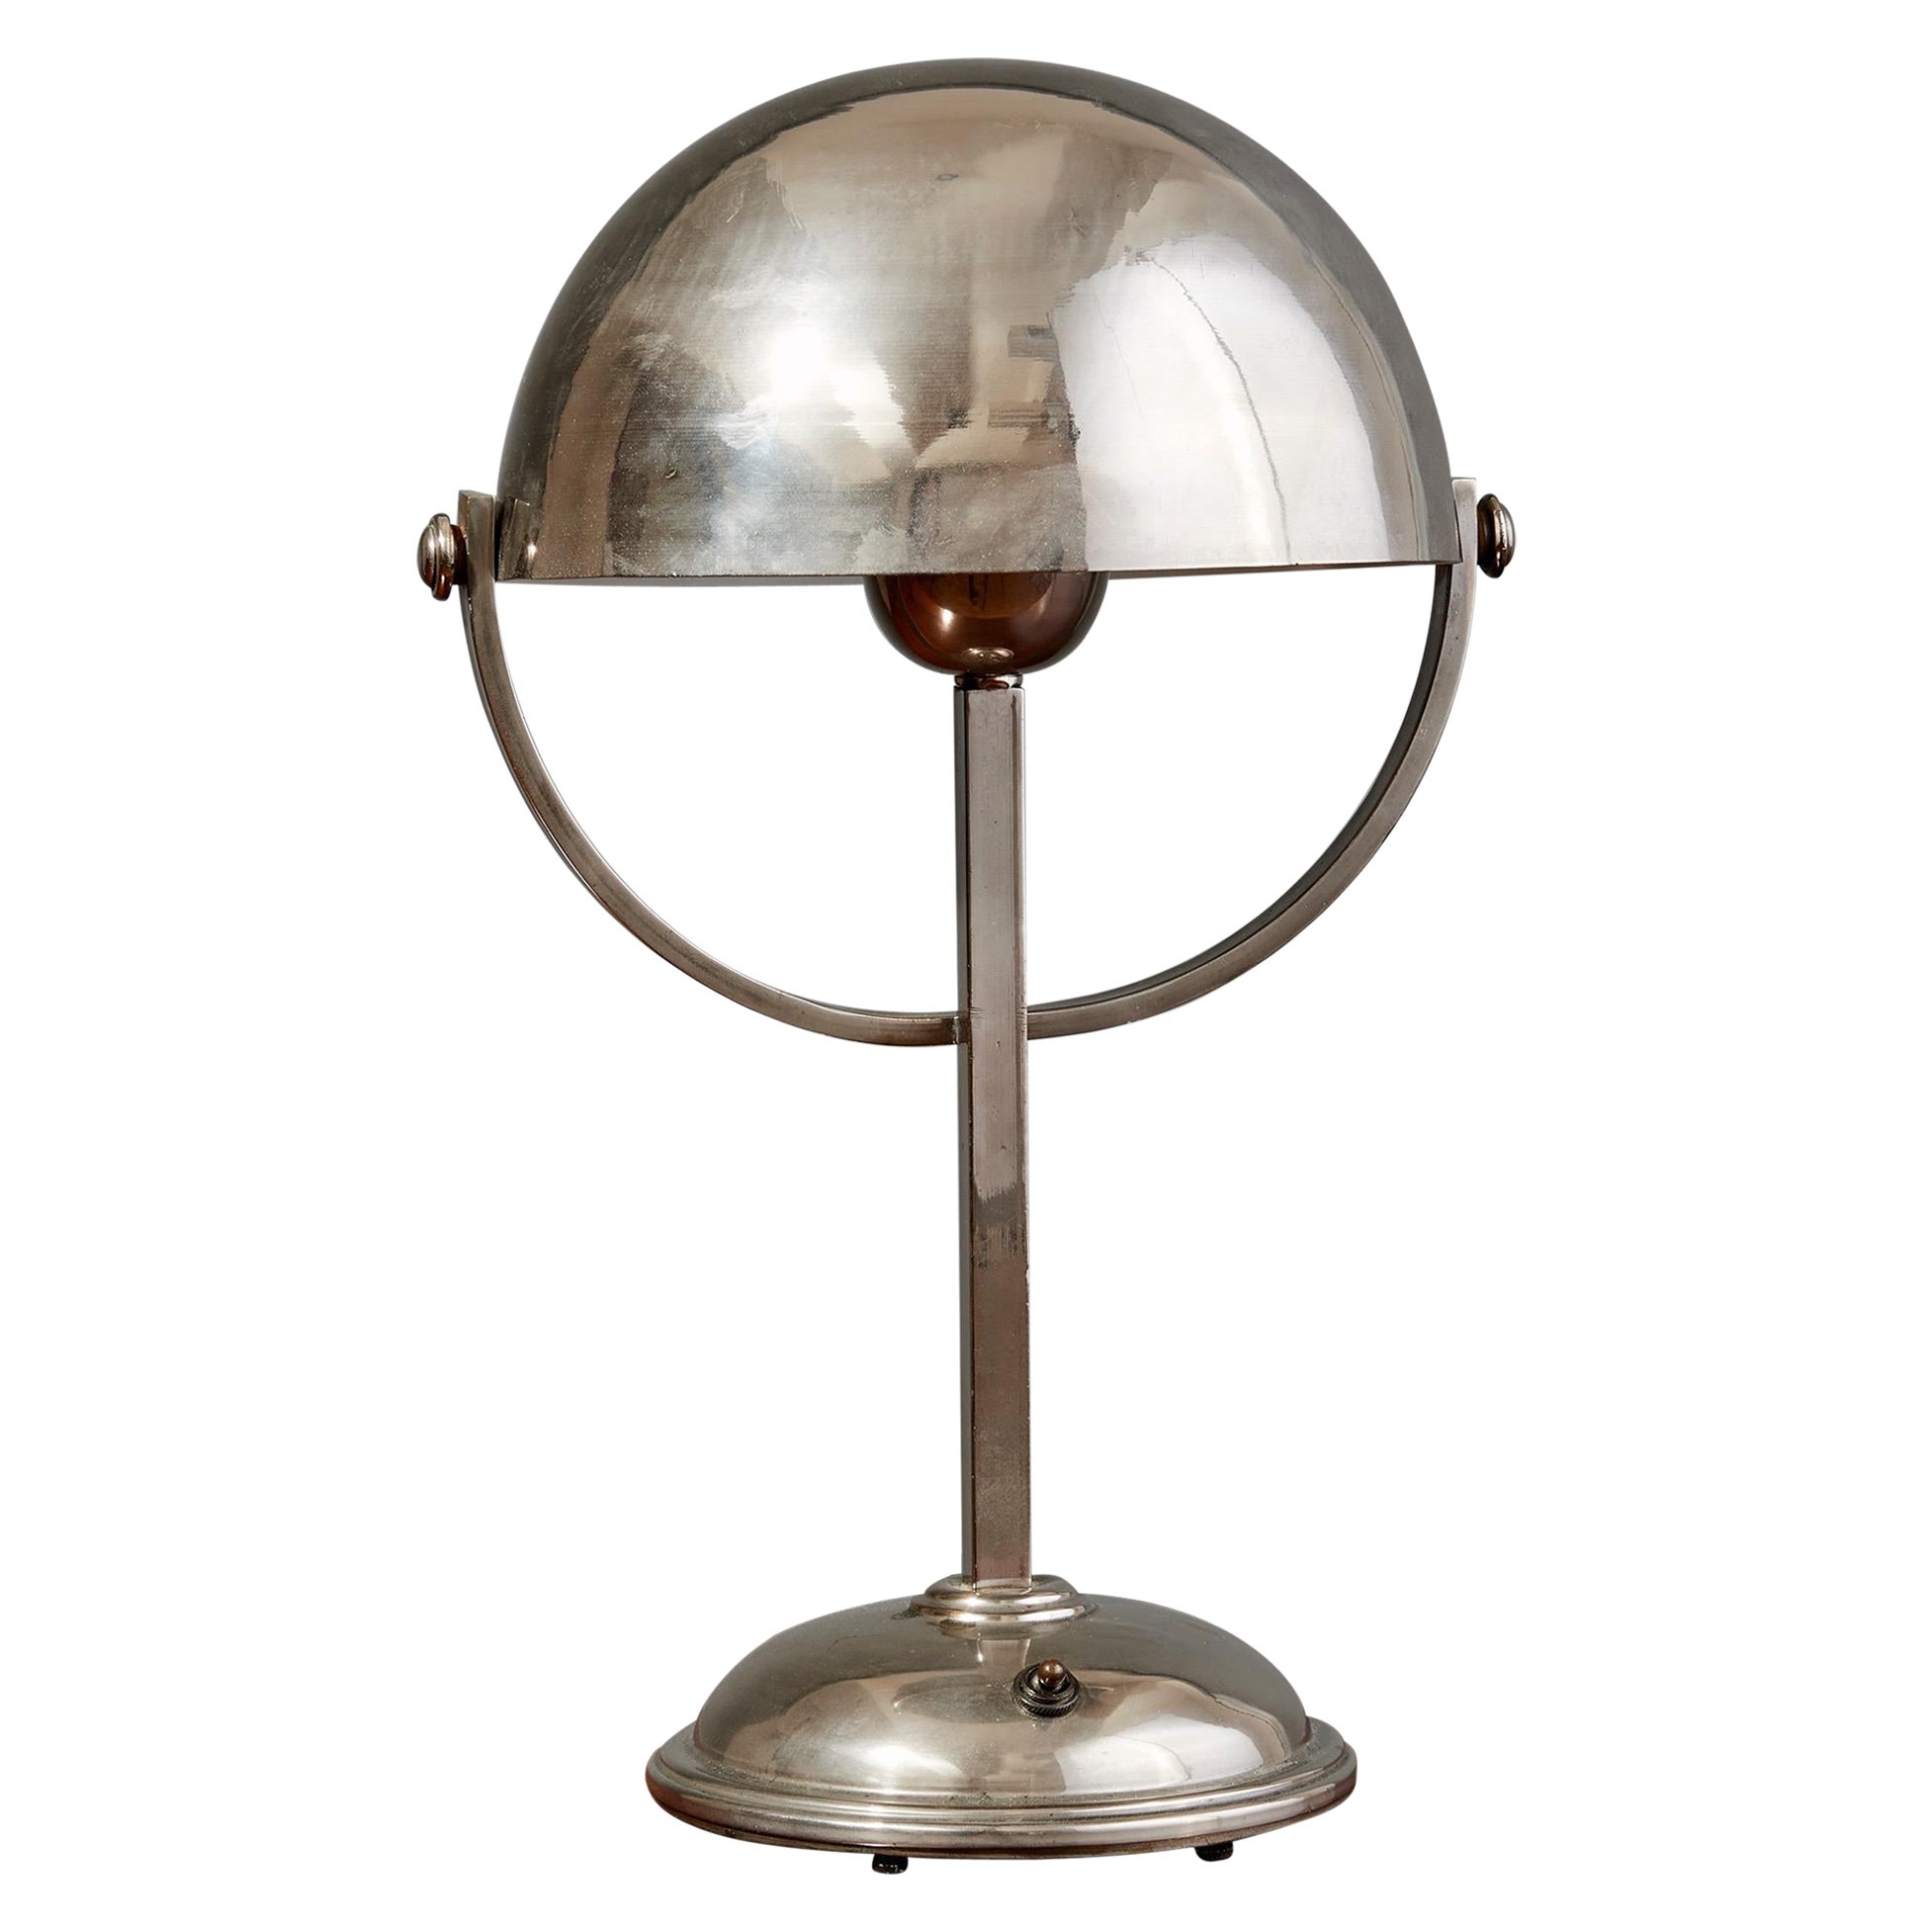 Lampe de table de style Felix Aublet en métal nickelé avec abat-jour arrondi, France, années 1930